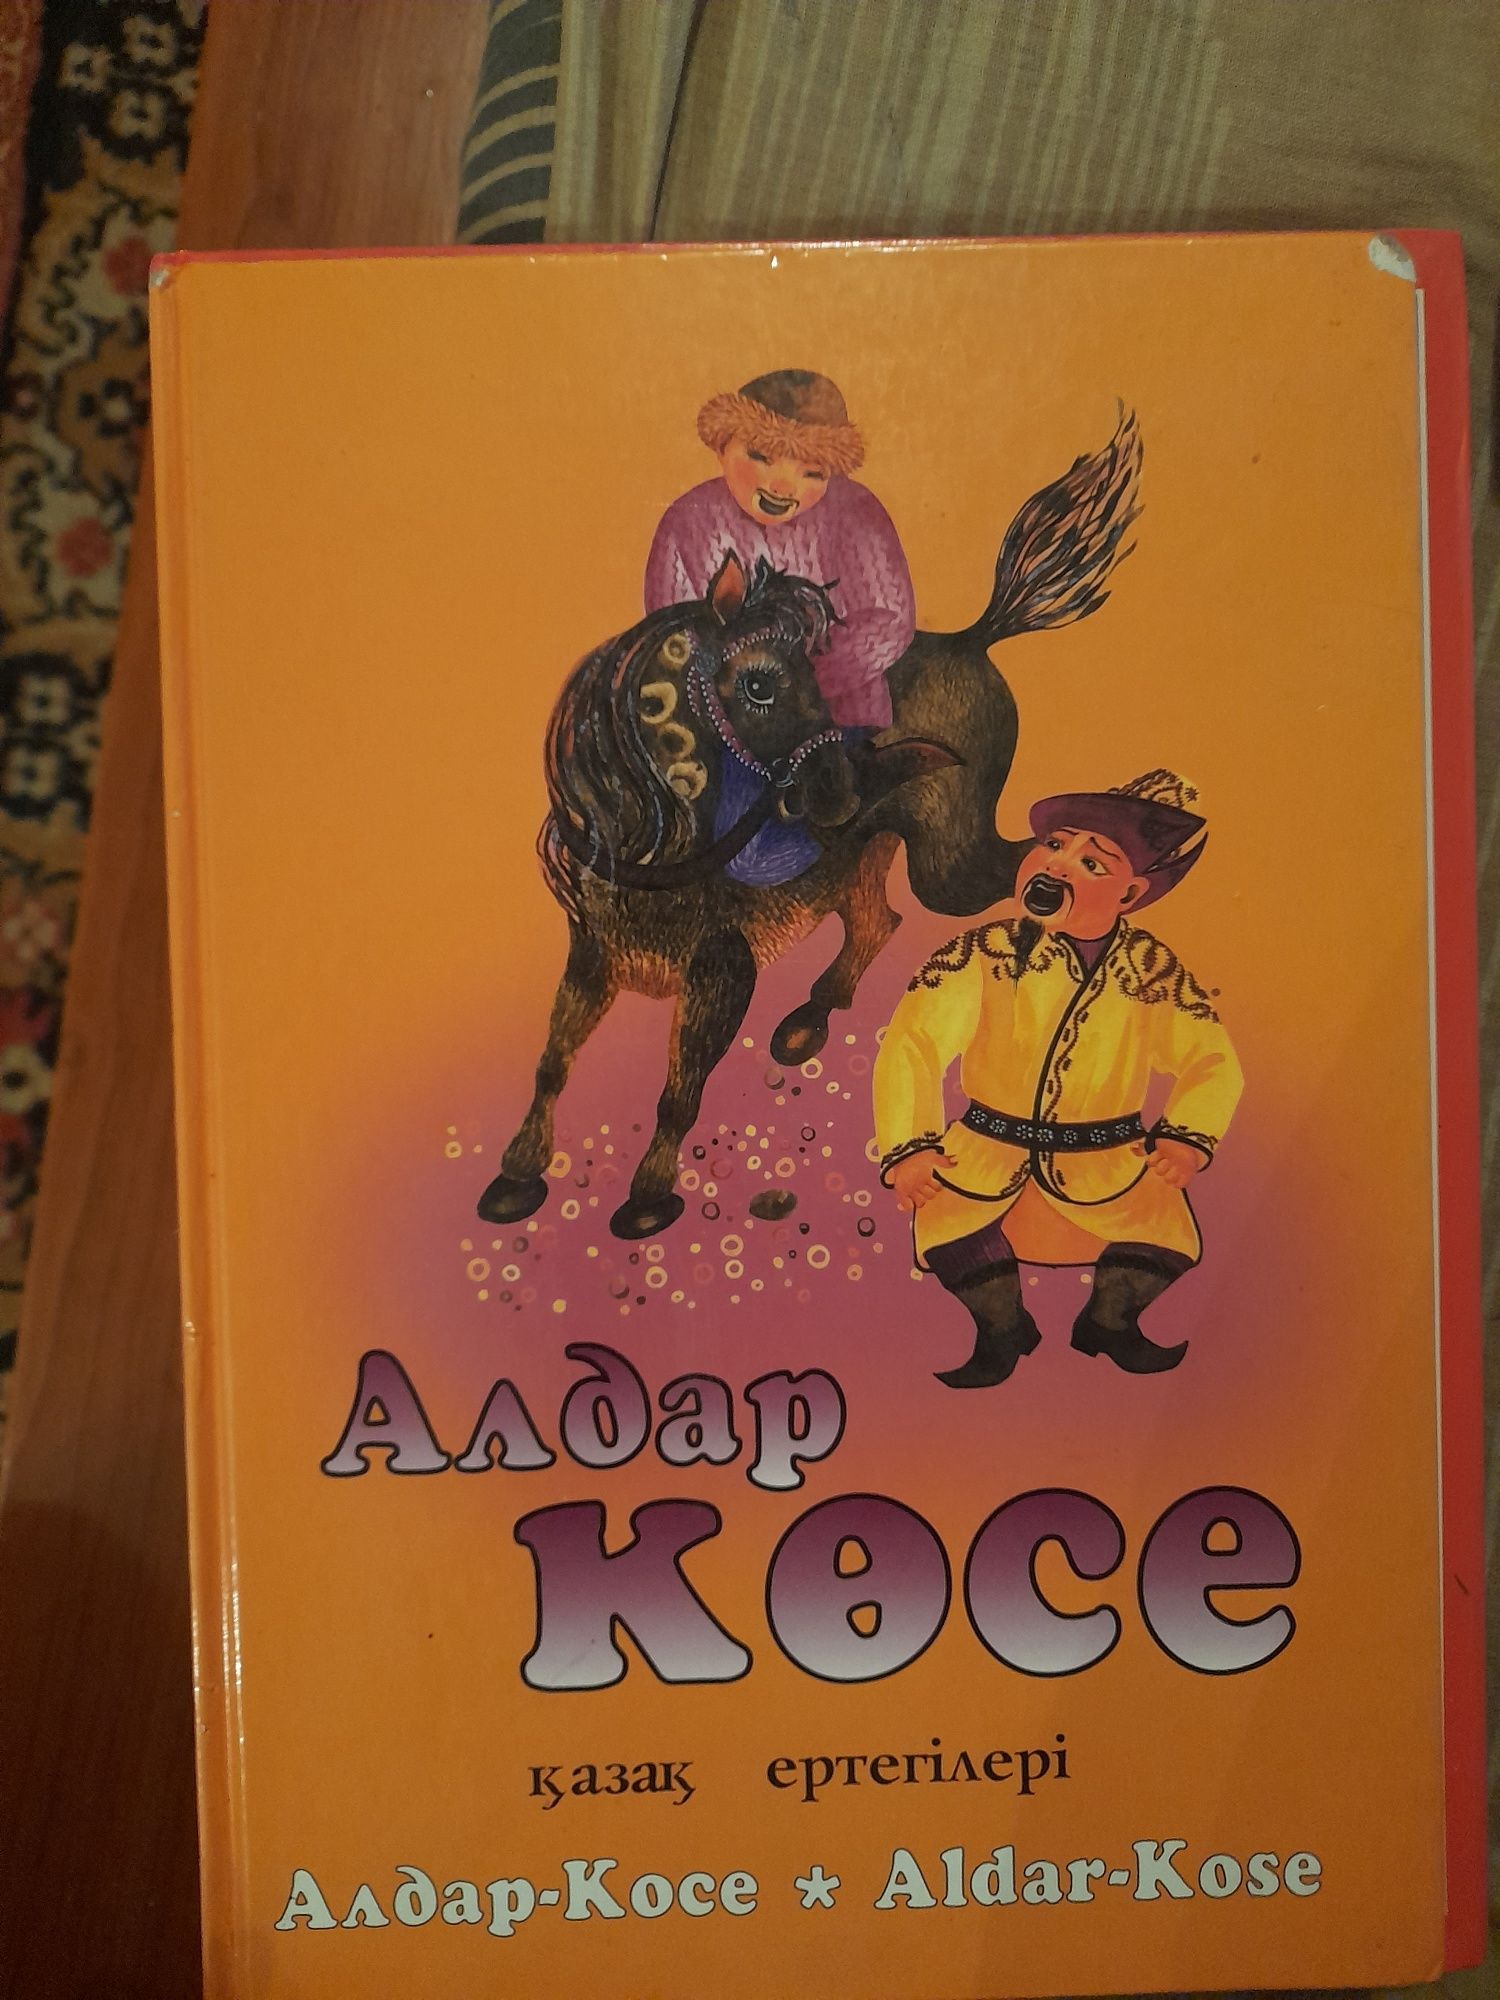 Книги для детей школьного возраста